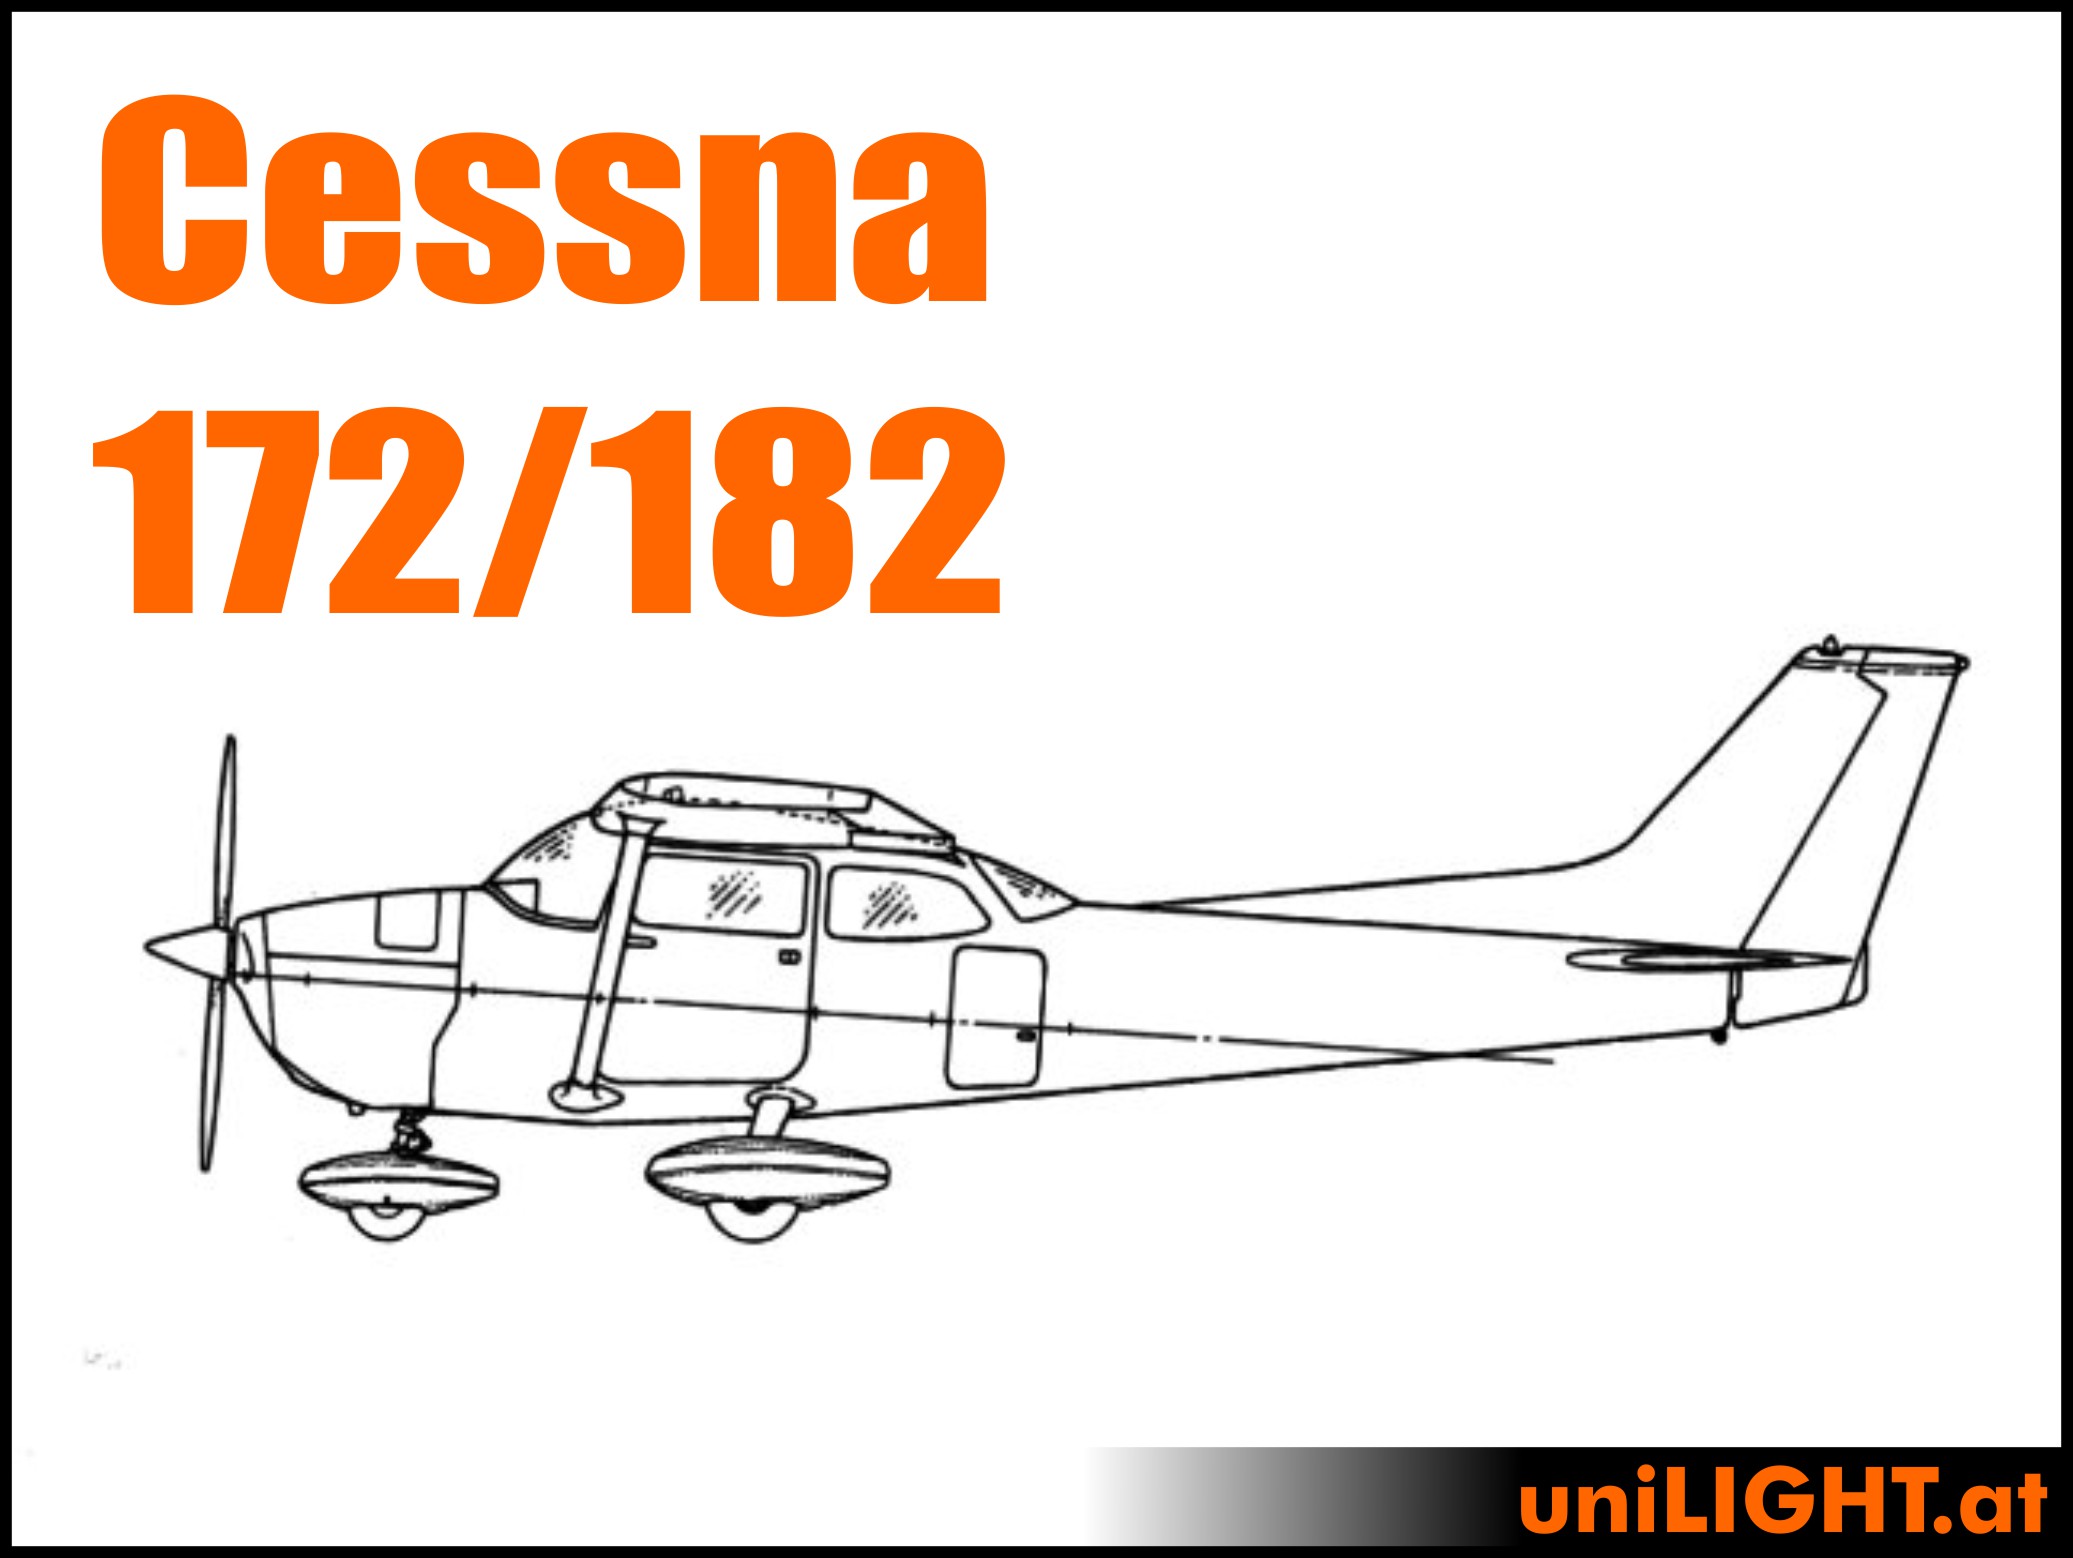 Cessna 172/182